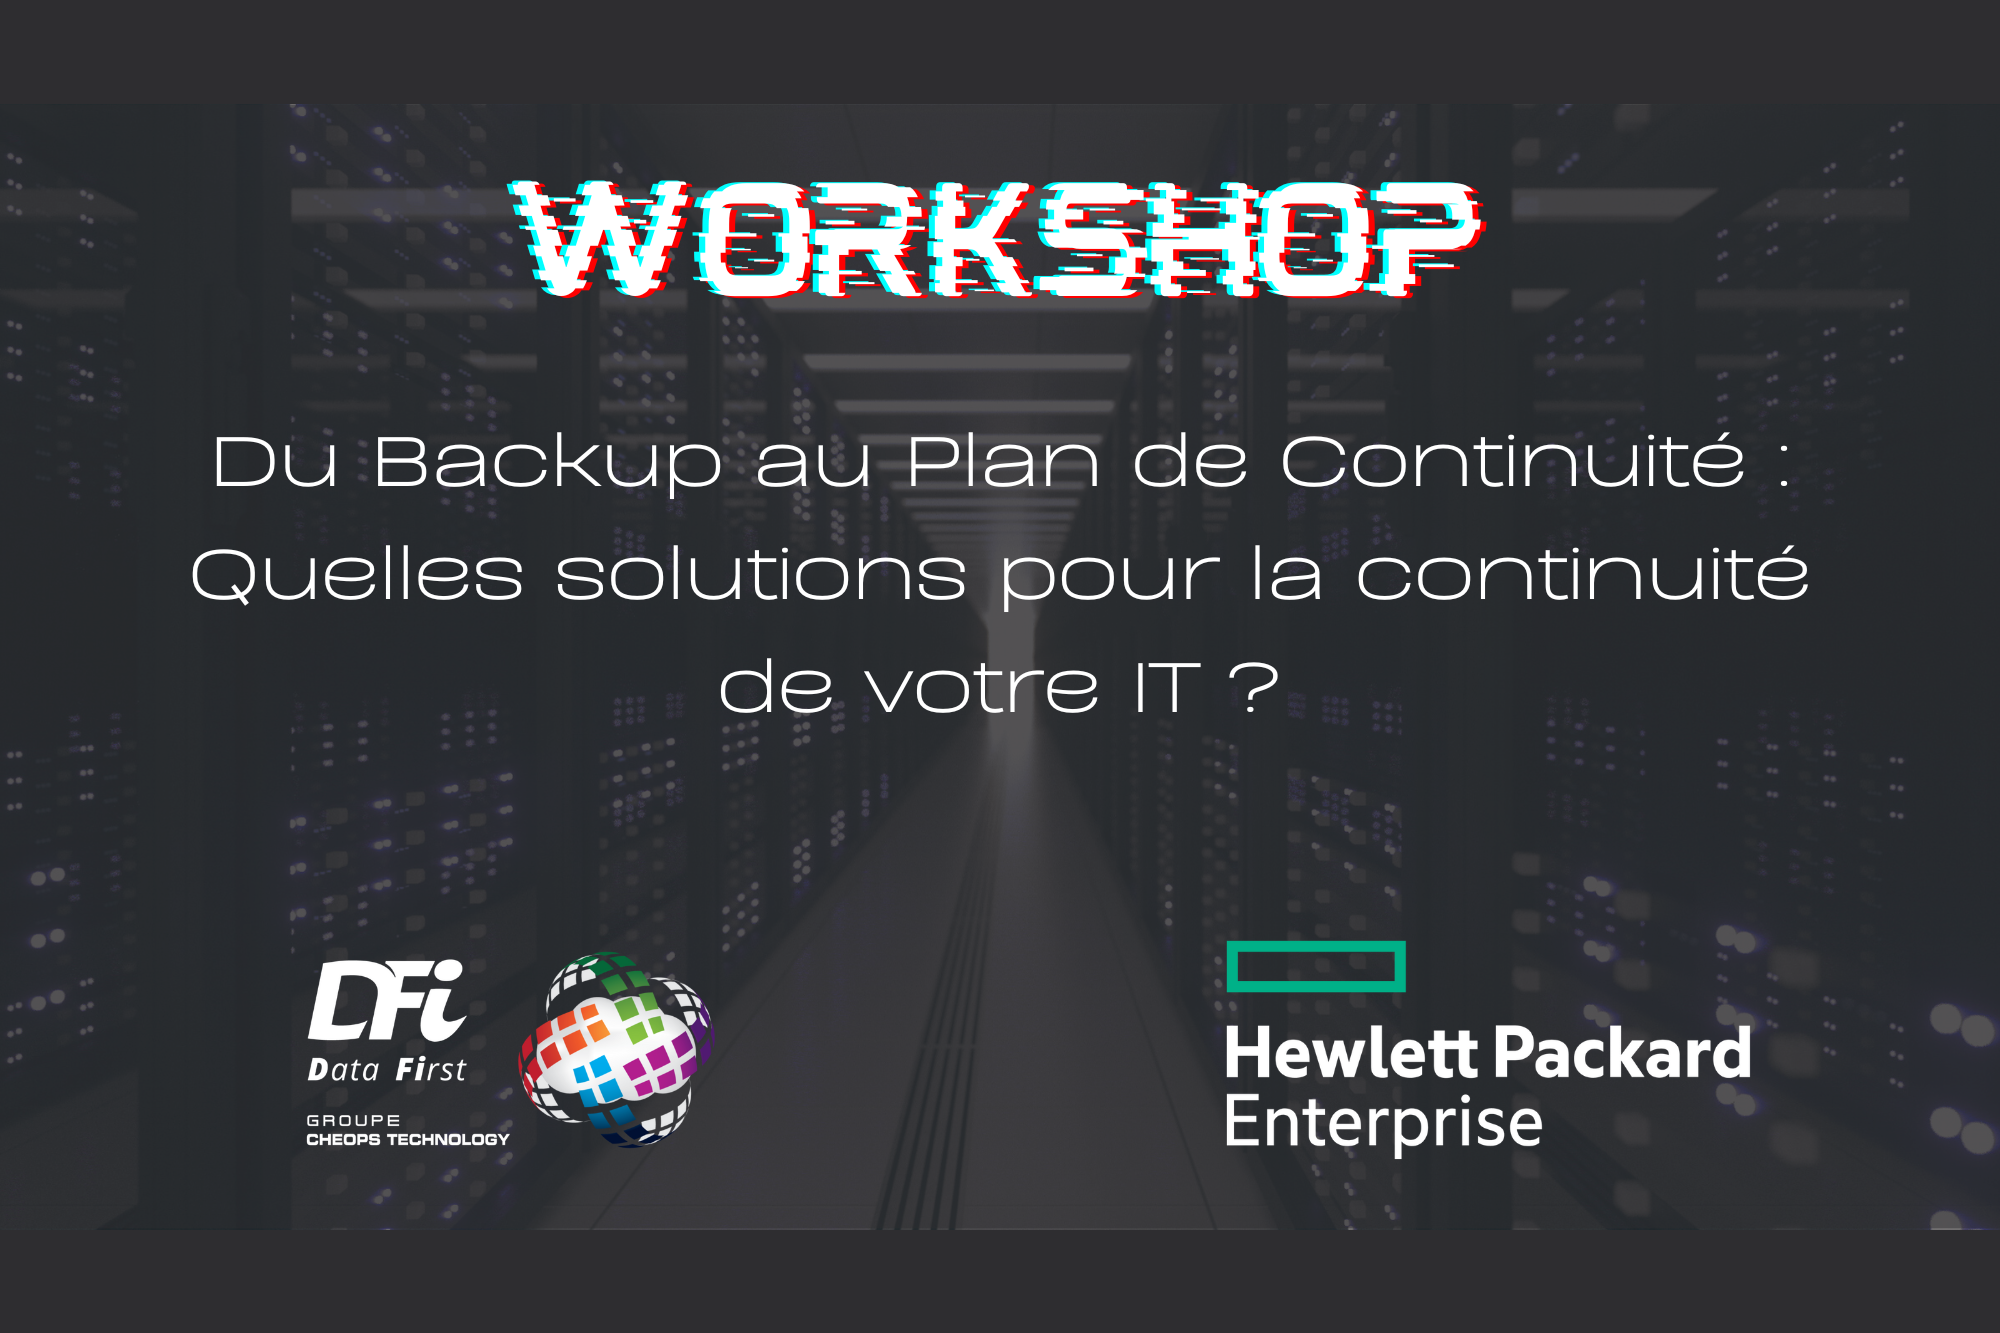 Workshop "Du Backup au Plan de Continuite : Quelle solutions pour la continuité de votre IT ?"